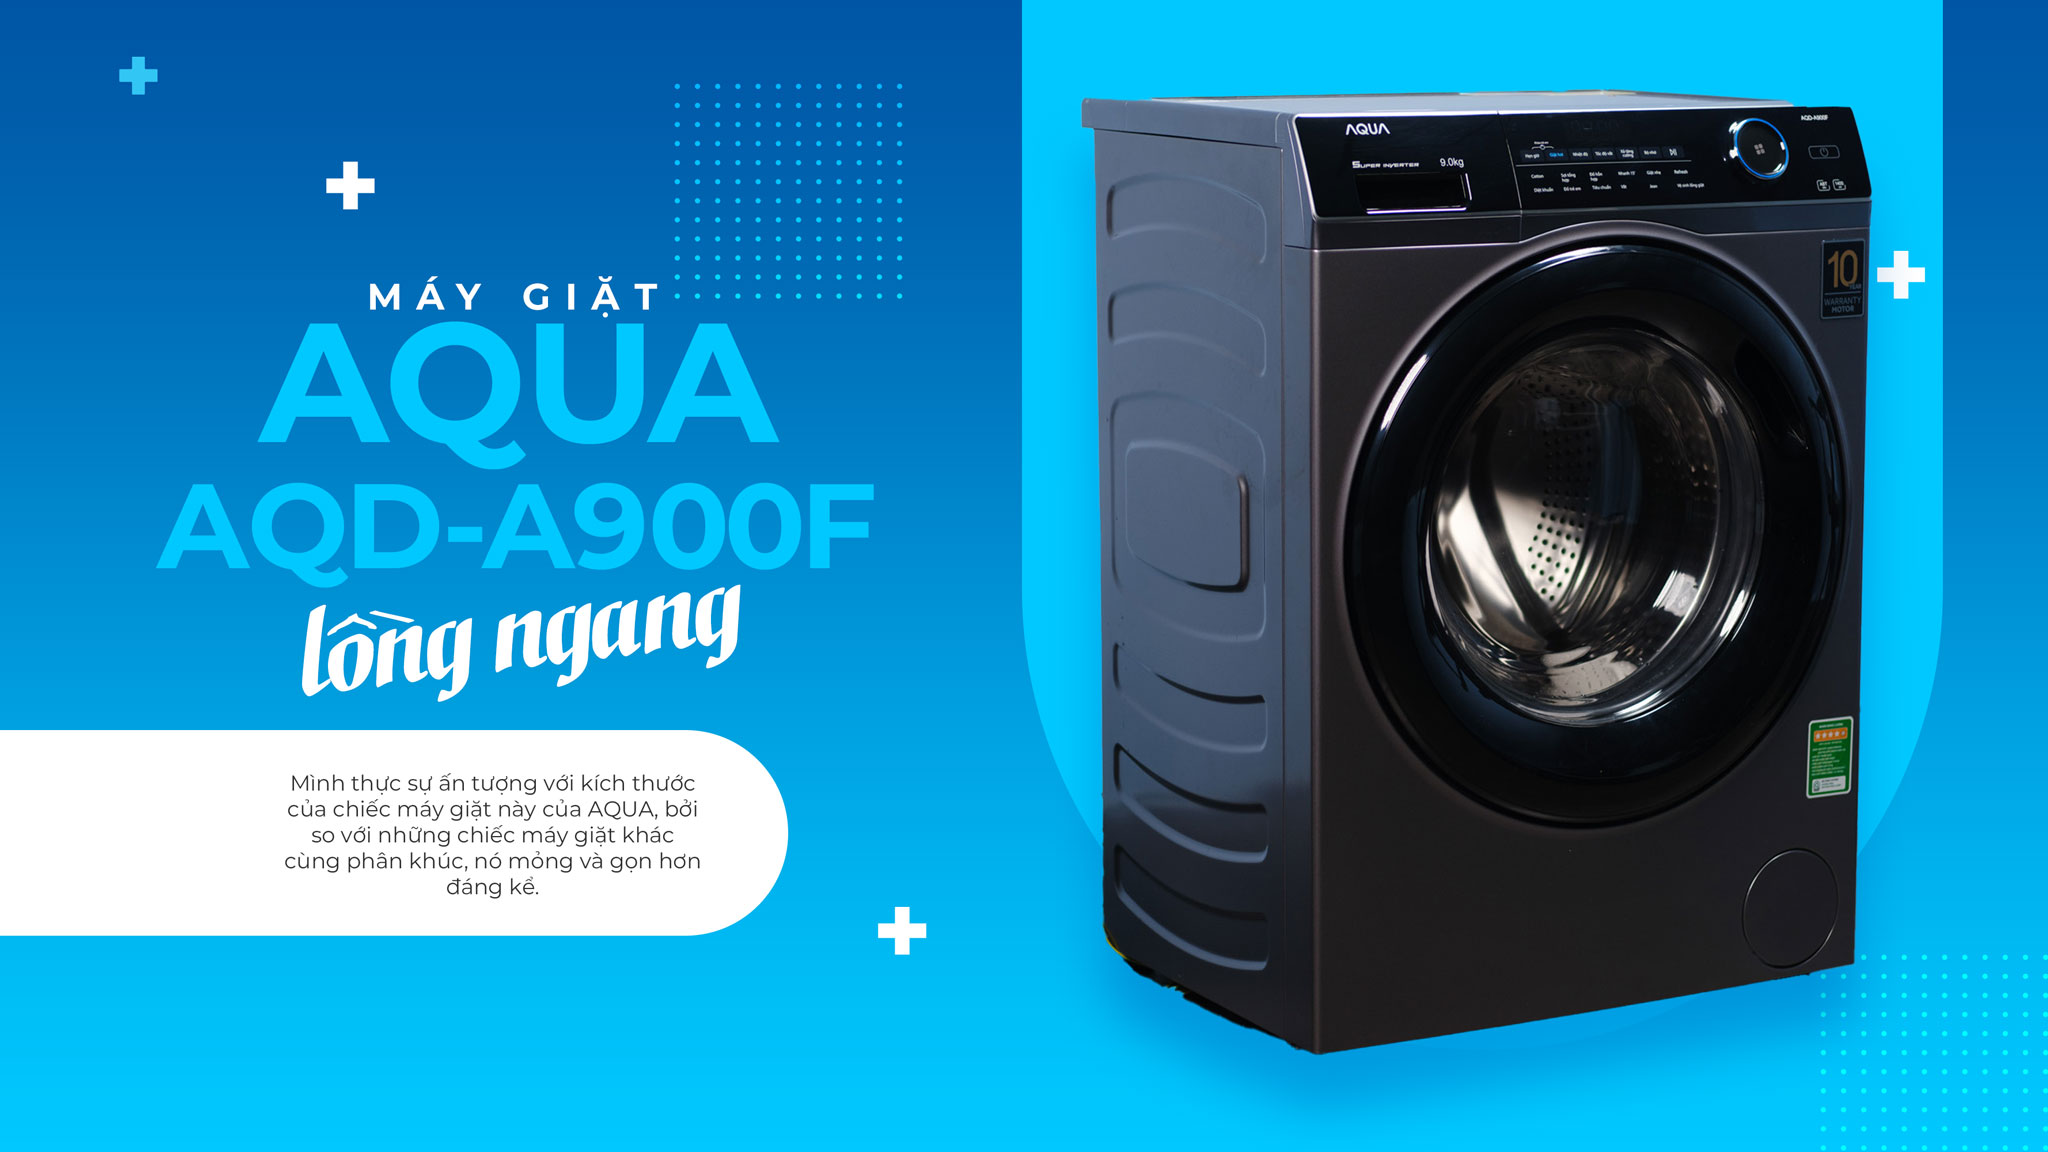 Trải nghiệm máy giặt lồng ngang AQUA AQD-A900F: Giặt sạch, êm ái, tiết kiệm